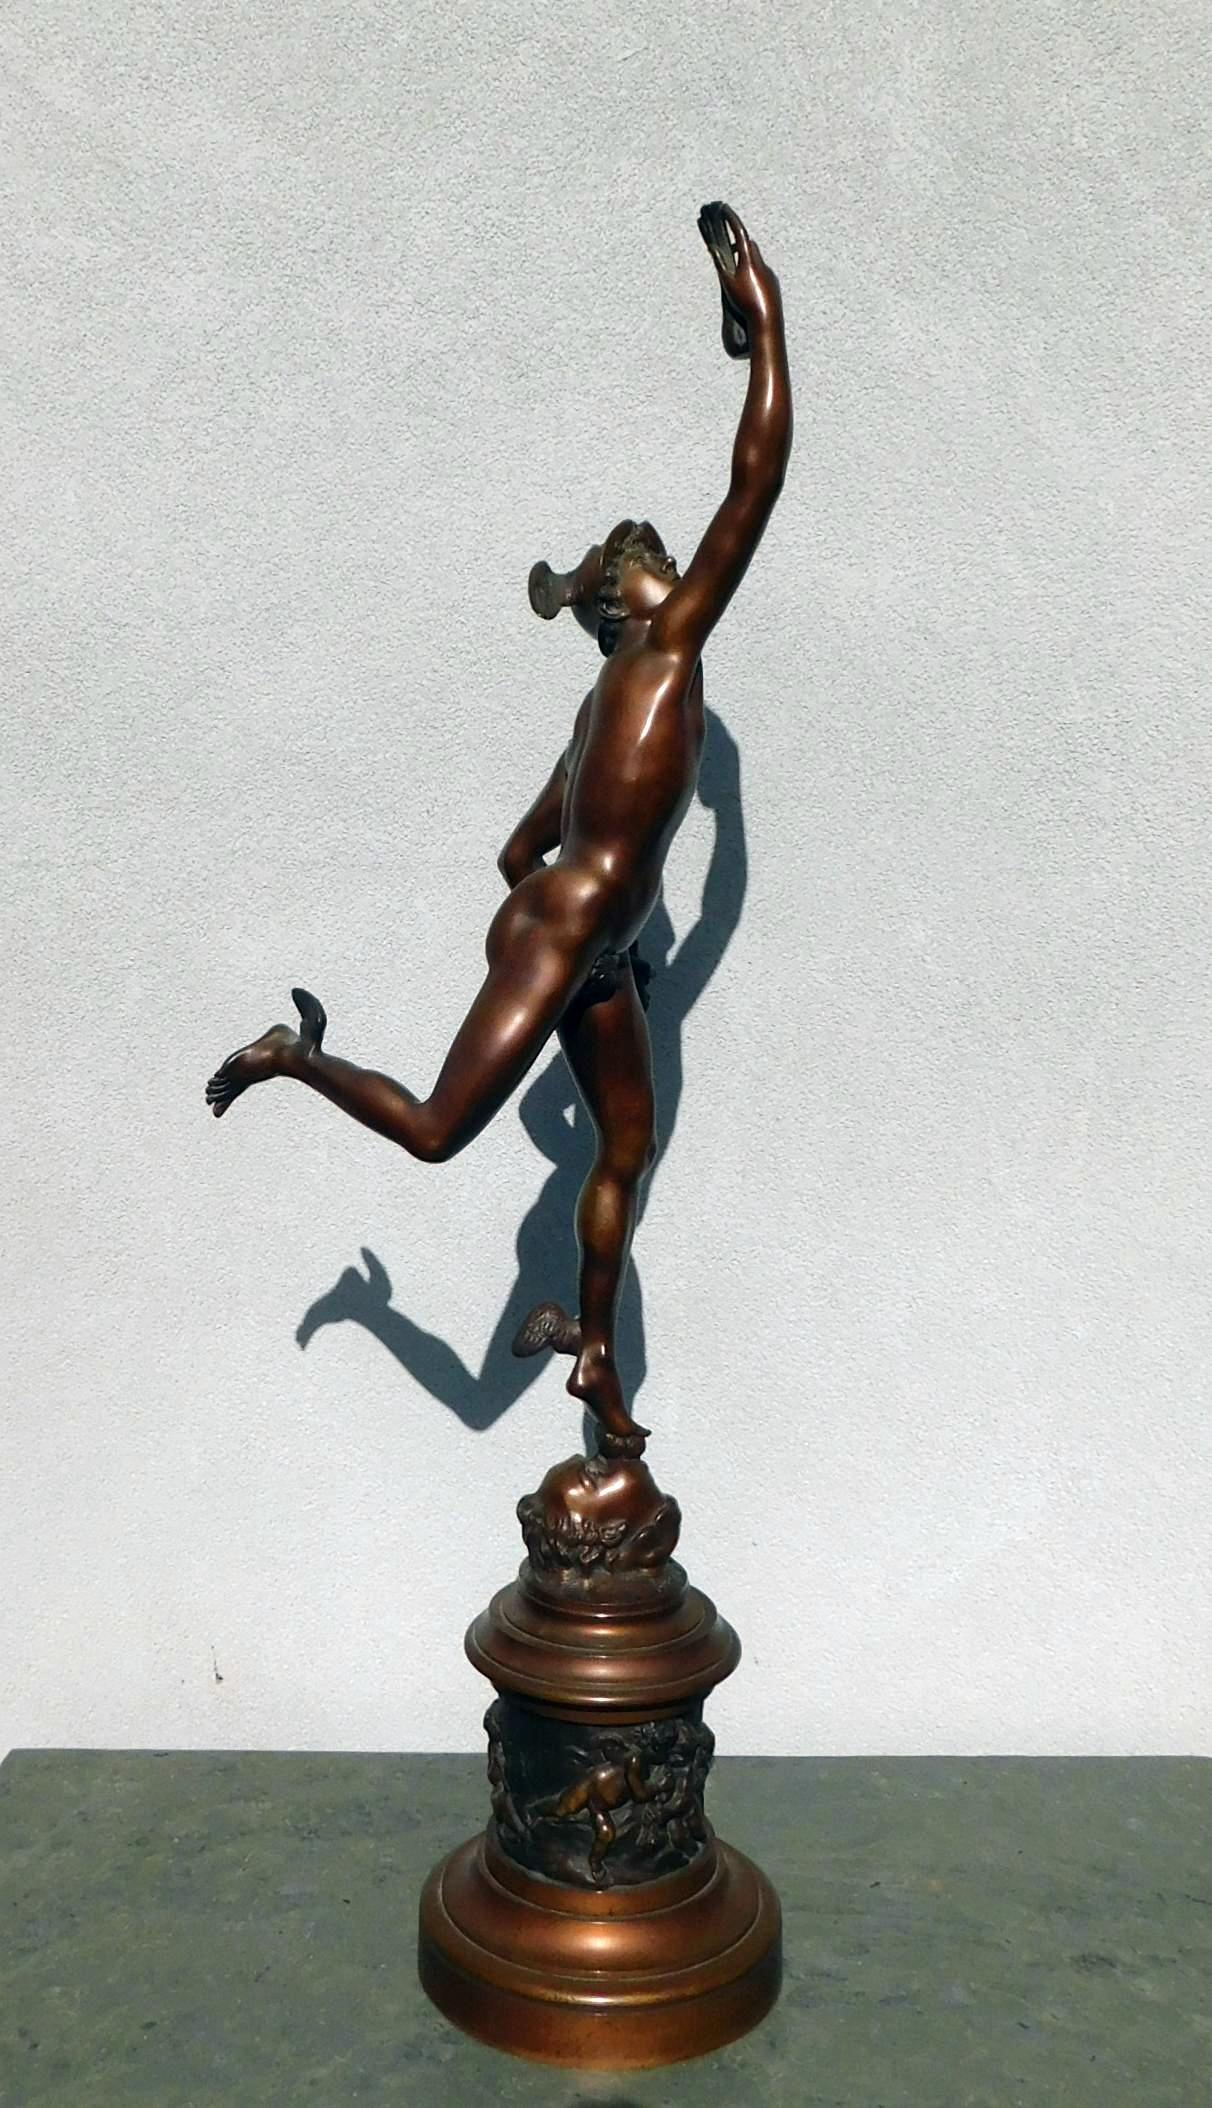 Pierre Emmanuel Guerin, (Amerikaner, NY, geboren in Frankreich, 1833-1911). 
Großer Bronzeguss des Merkur aus der Gießerei PE Guerin. Maße: 36 